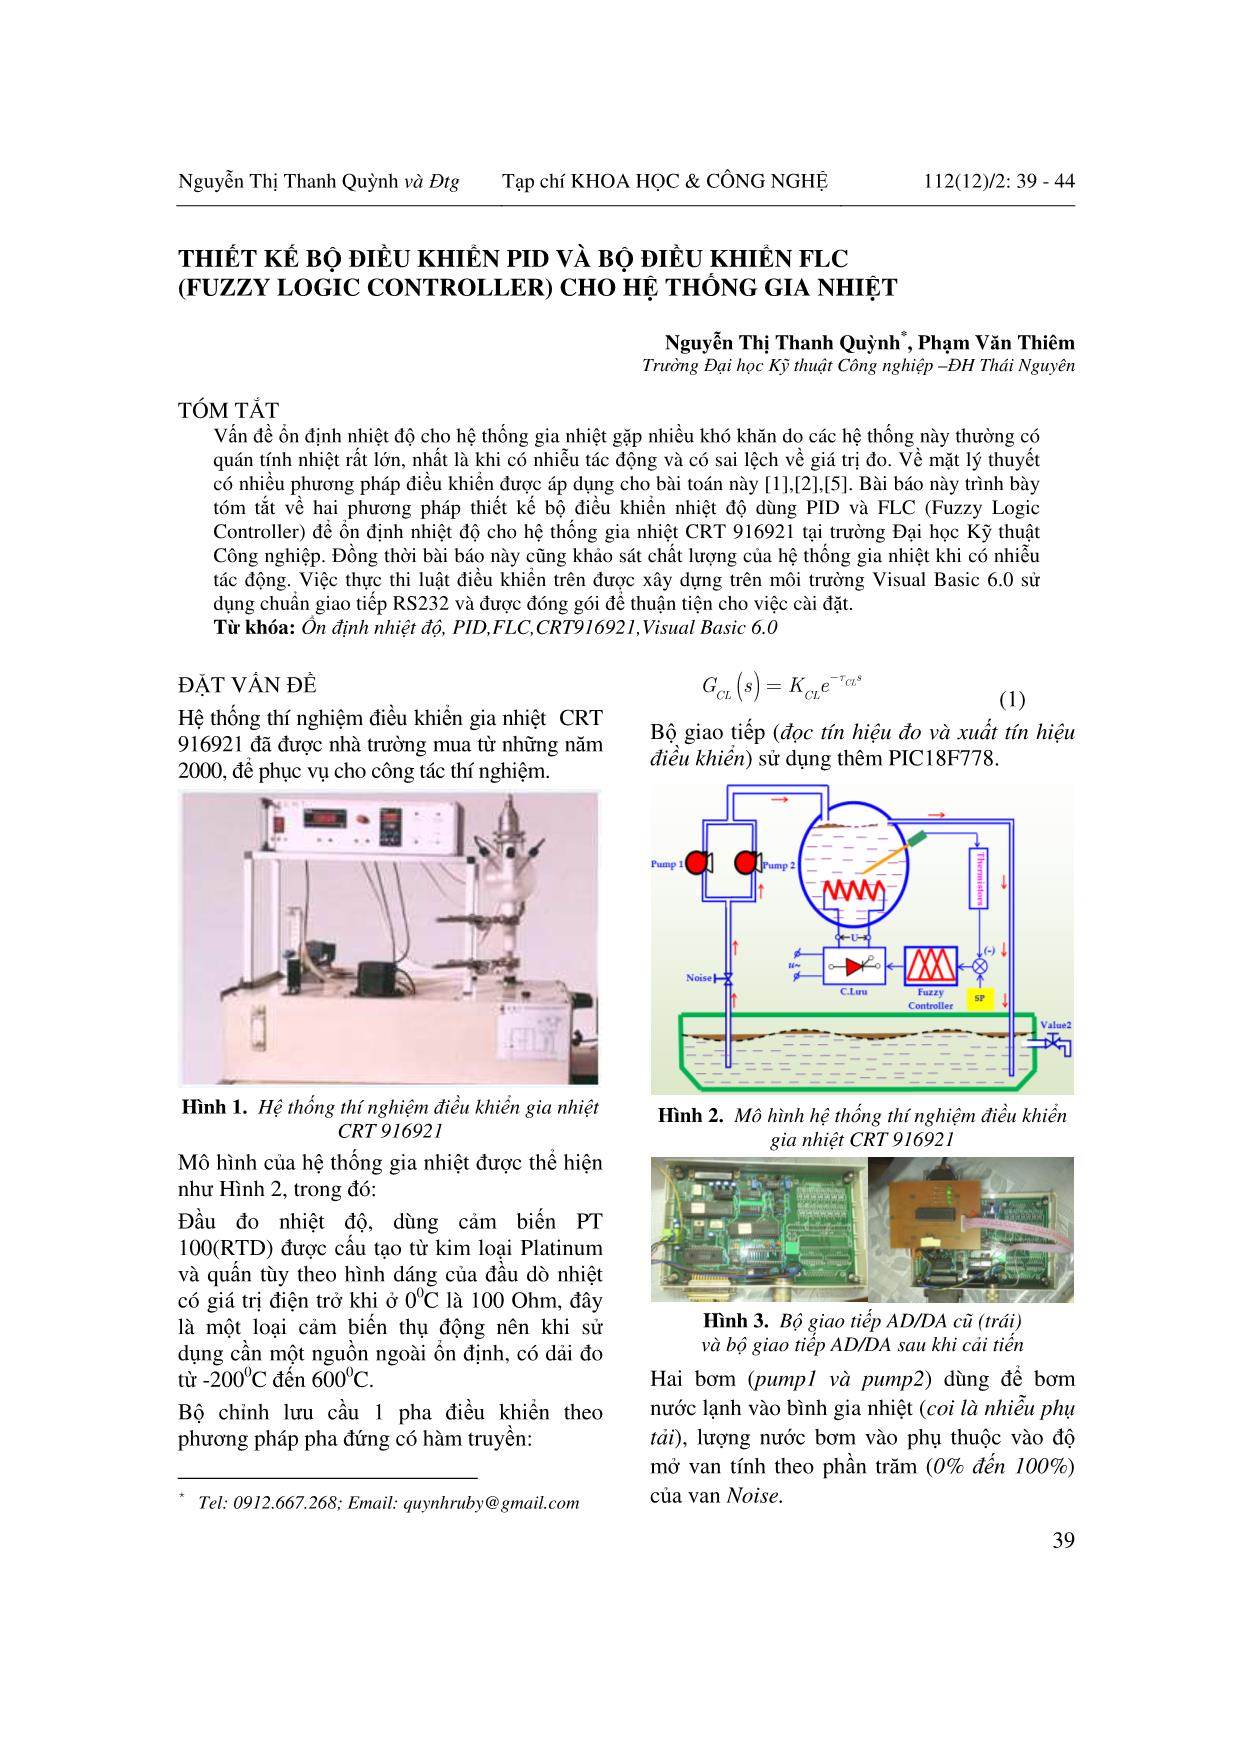 Thiết kế bộ điều khiển PID và bộ điều khiển FLC (Fuzzy Logic Controller) cho hệ thống gia nhiệt trang 1